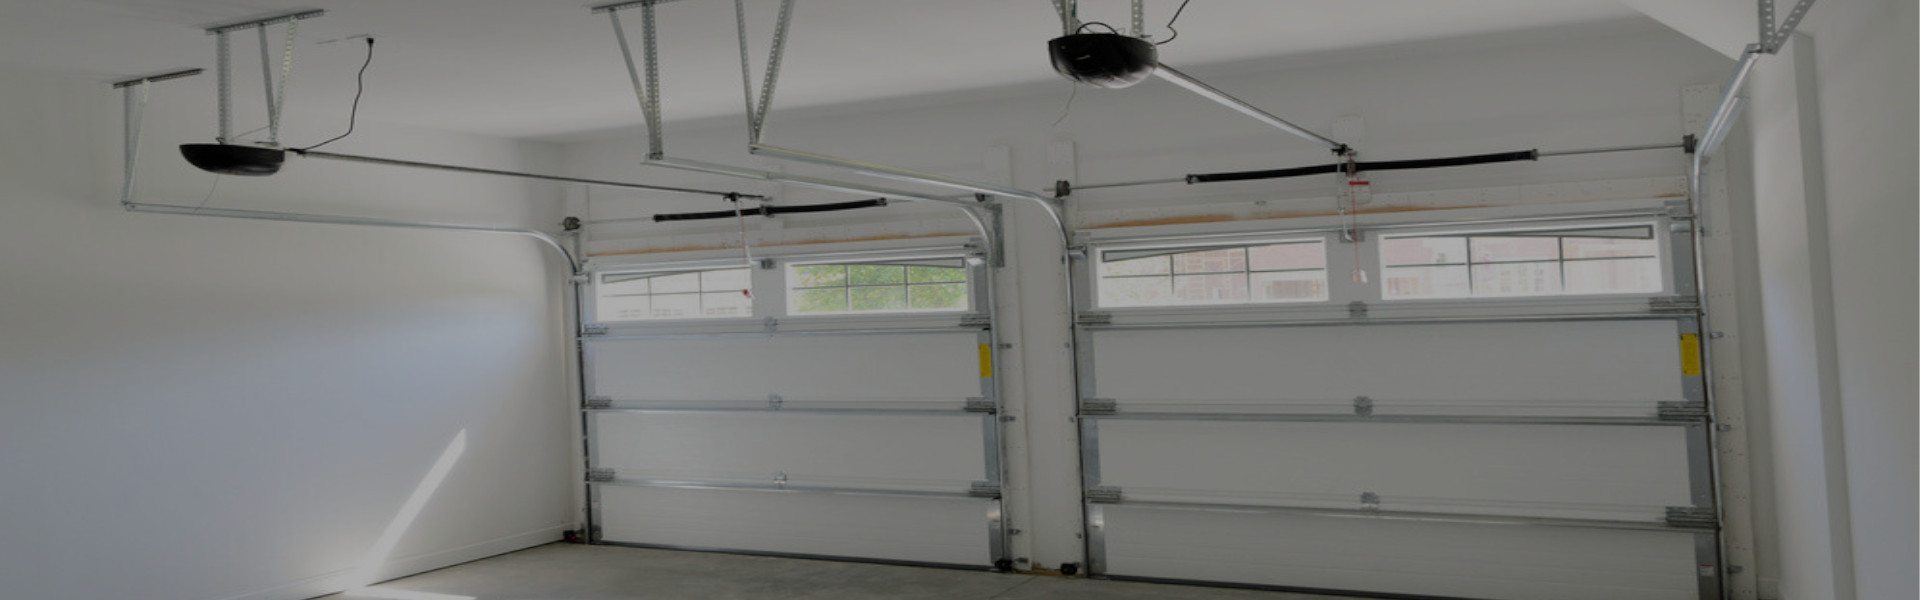 Slider Garage Door Repair, Glaziers in Buckhurst Hill, IG9